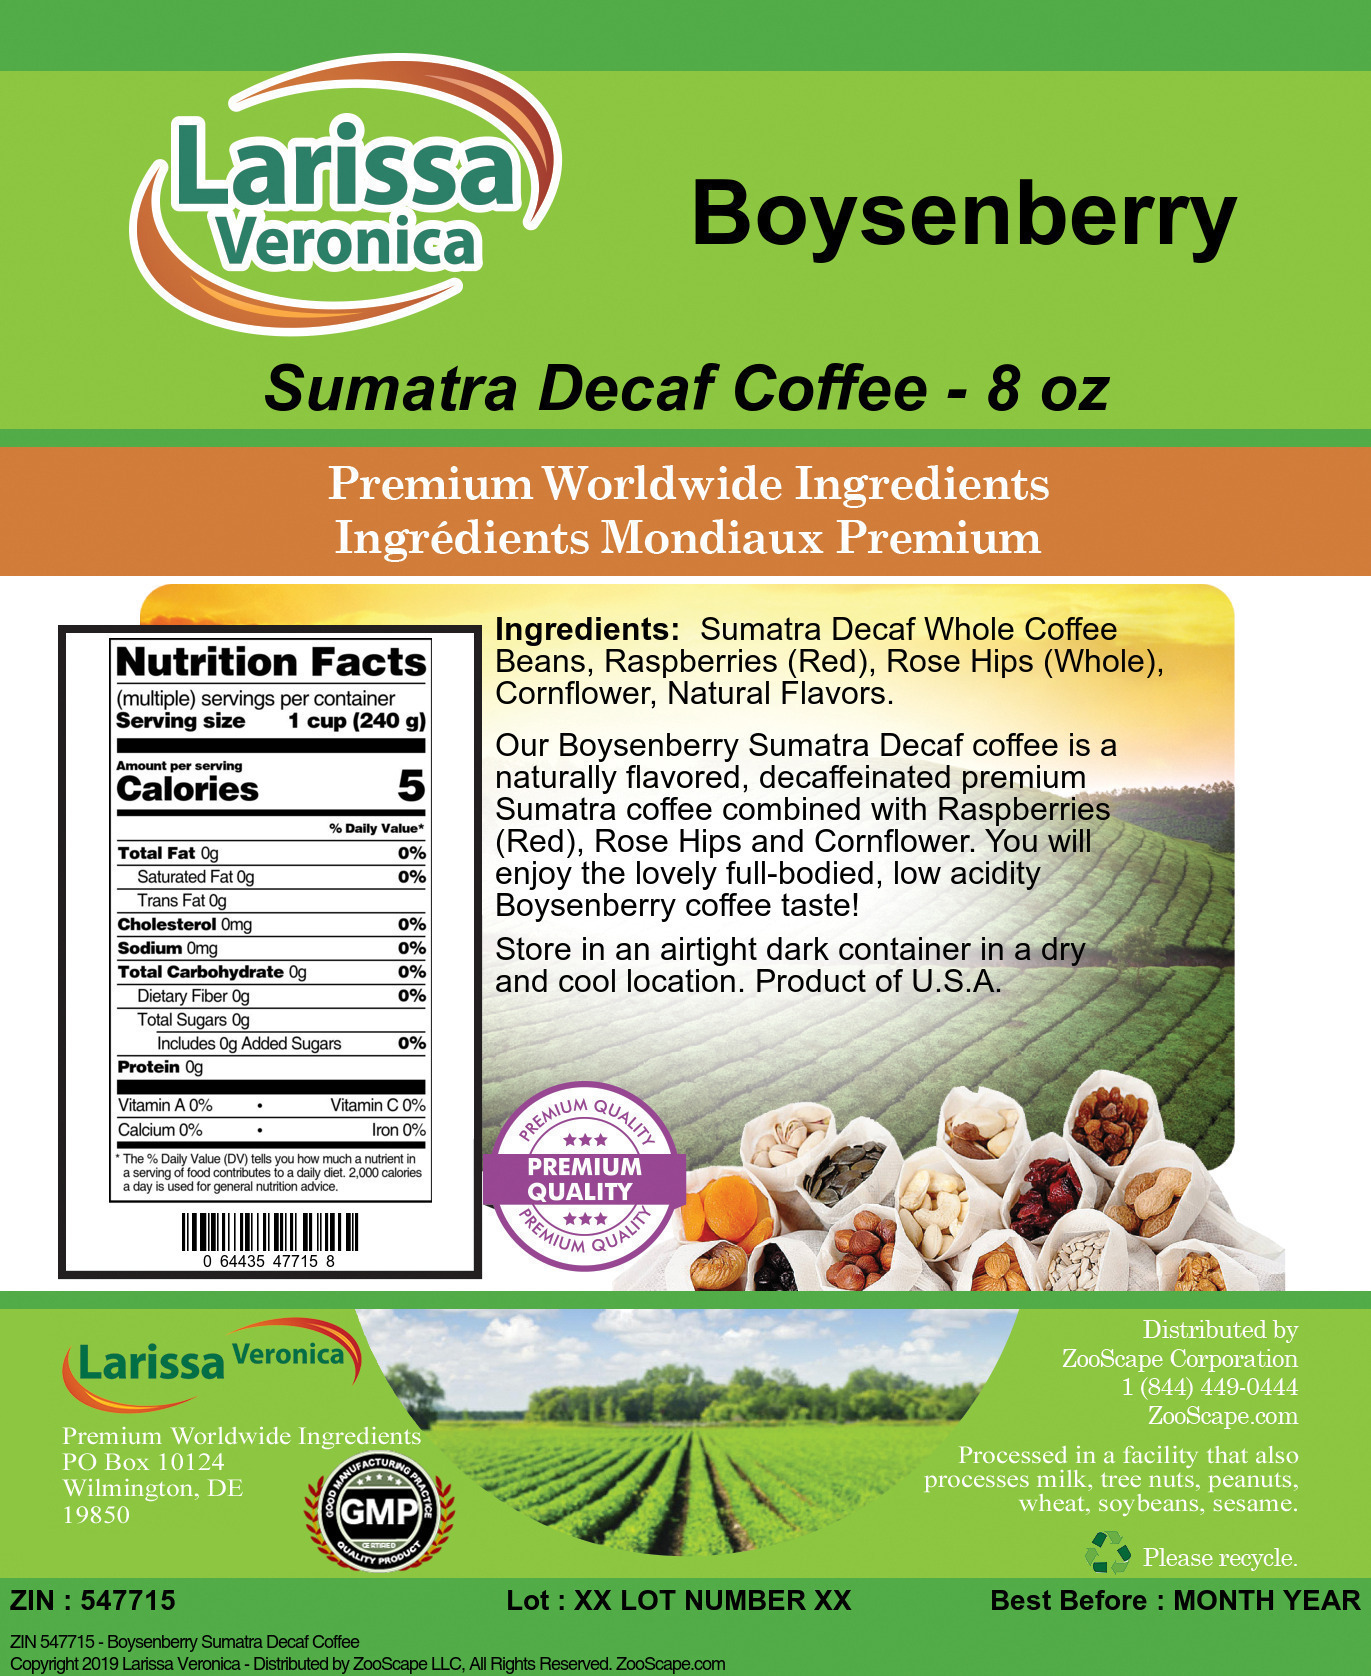 Boysenberry Sumatra Decaf Coffee - Label